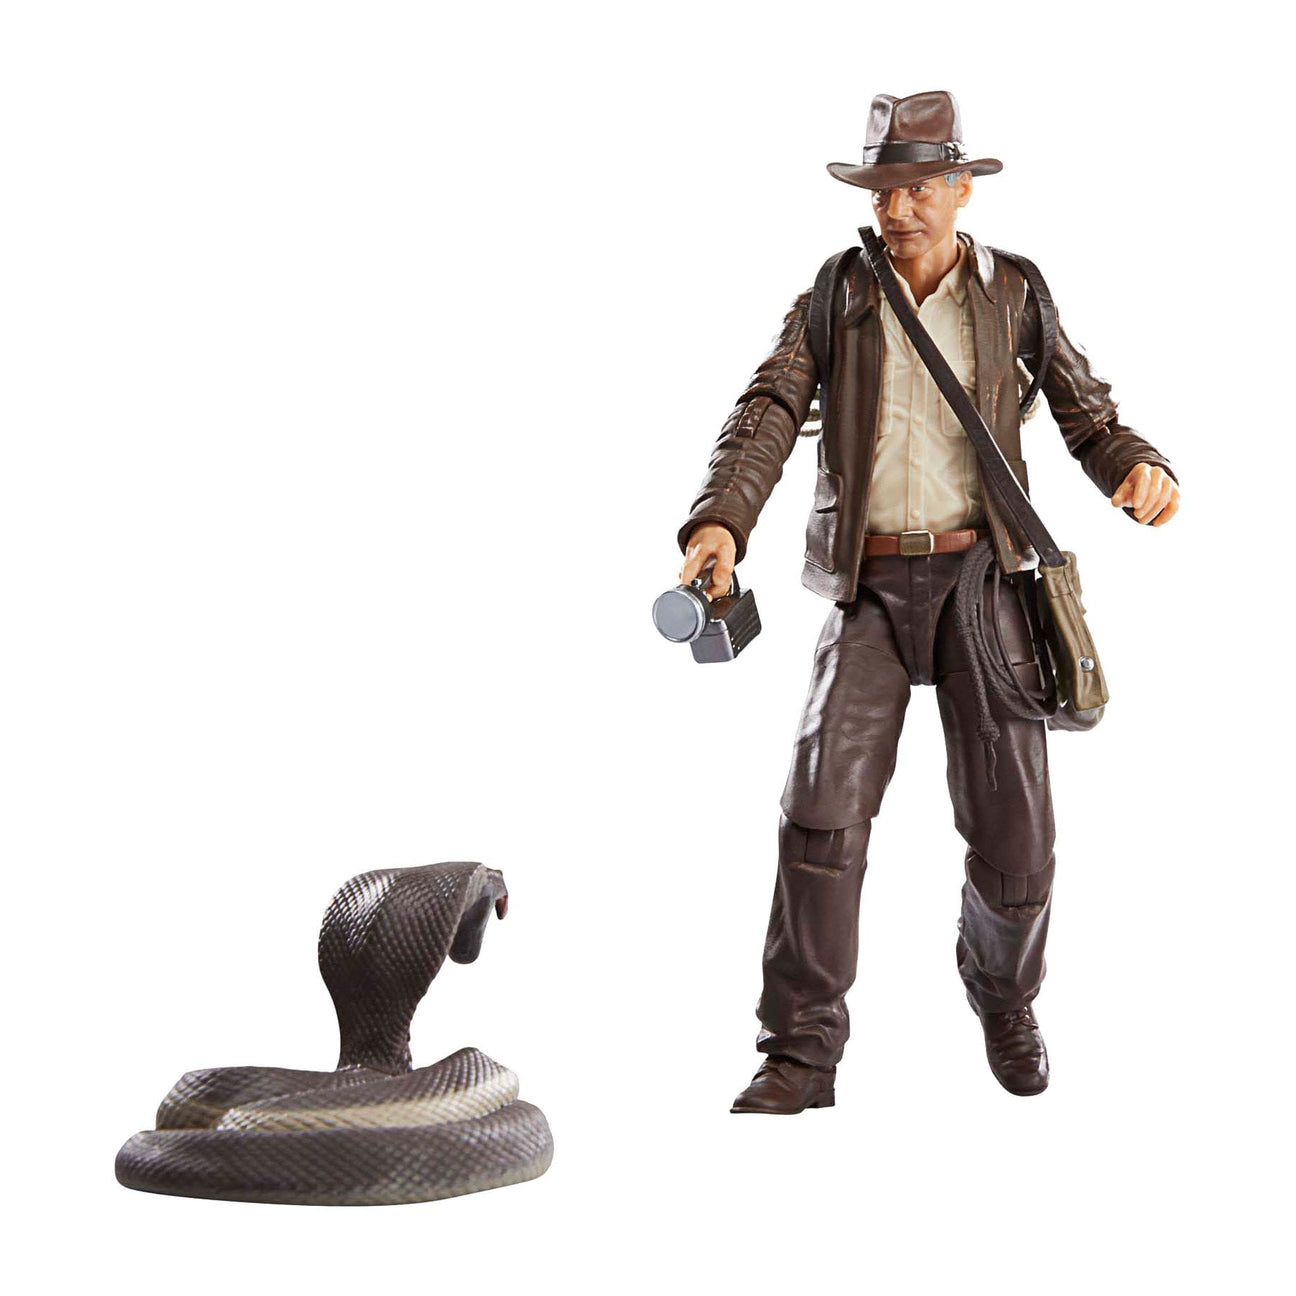 Indiana Jones Adventure Series: Indiana Jones (Dial of Destiny)-Actionfiguren-Hasbro-Mighty Underground